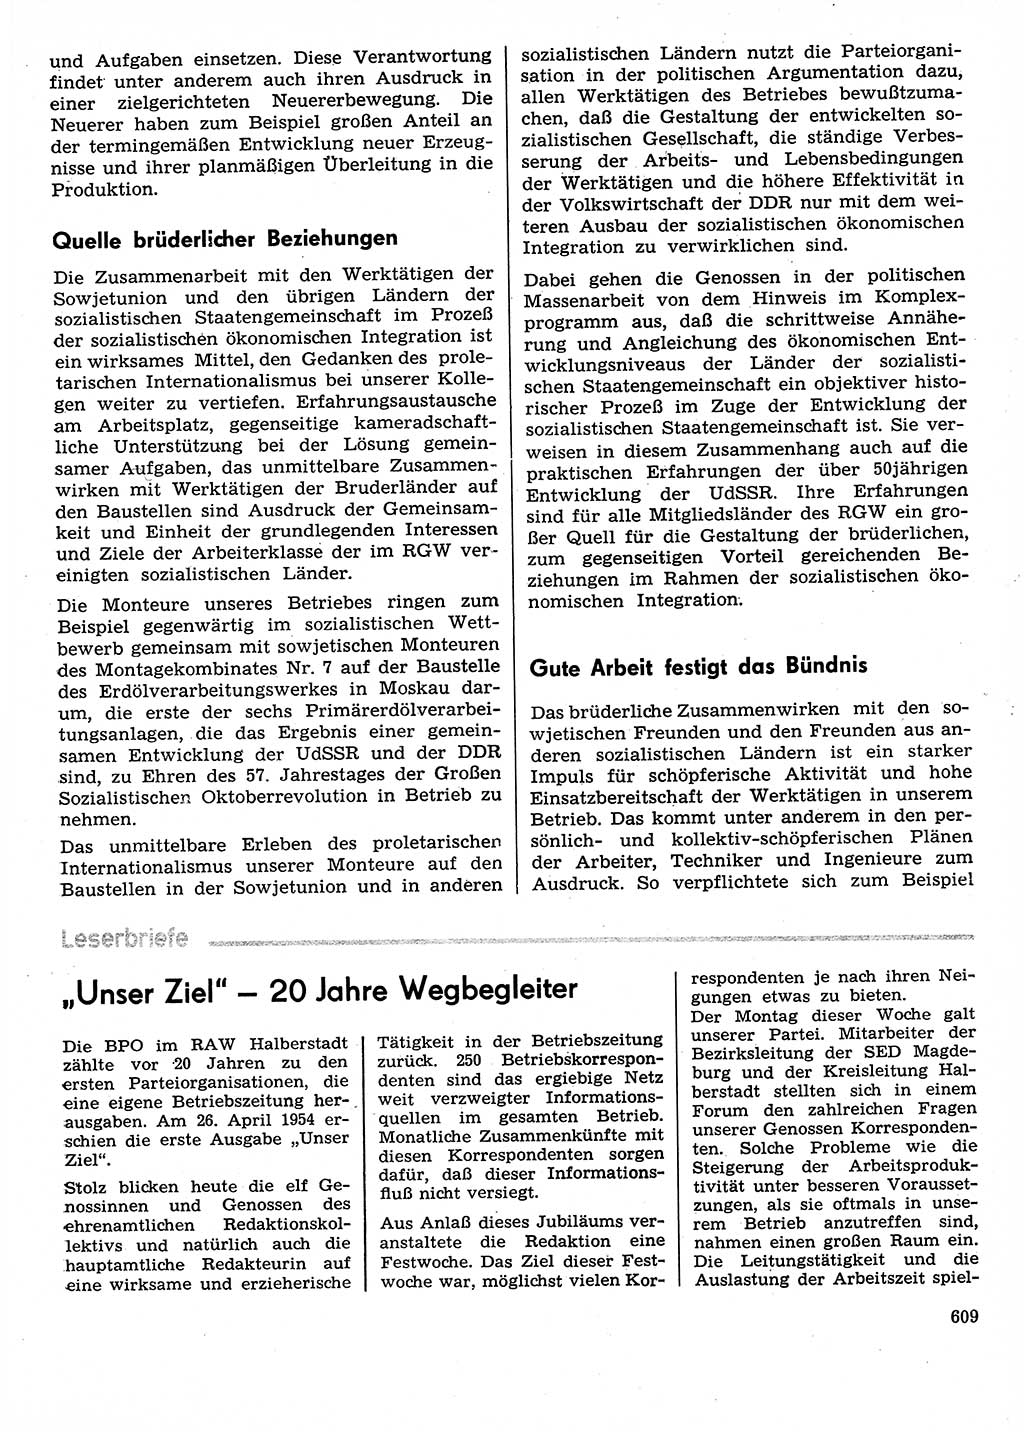 Neuer Weg (NW), Organ des Zentralkomitees (ZK) der SED (Sozialistische Einheitspartei Deutschlands) für Fragen des Parteilebens, 29. Jahrgang [Deutsche Demokratische Republik (DDR)] 1974, Seite 609 (NW ZK SED DDR 1974, S. 609)